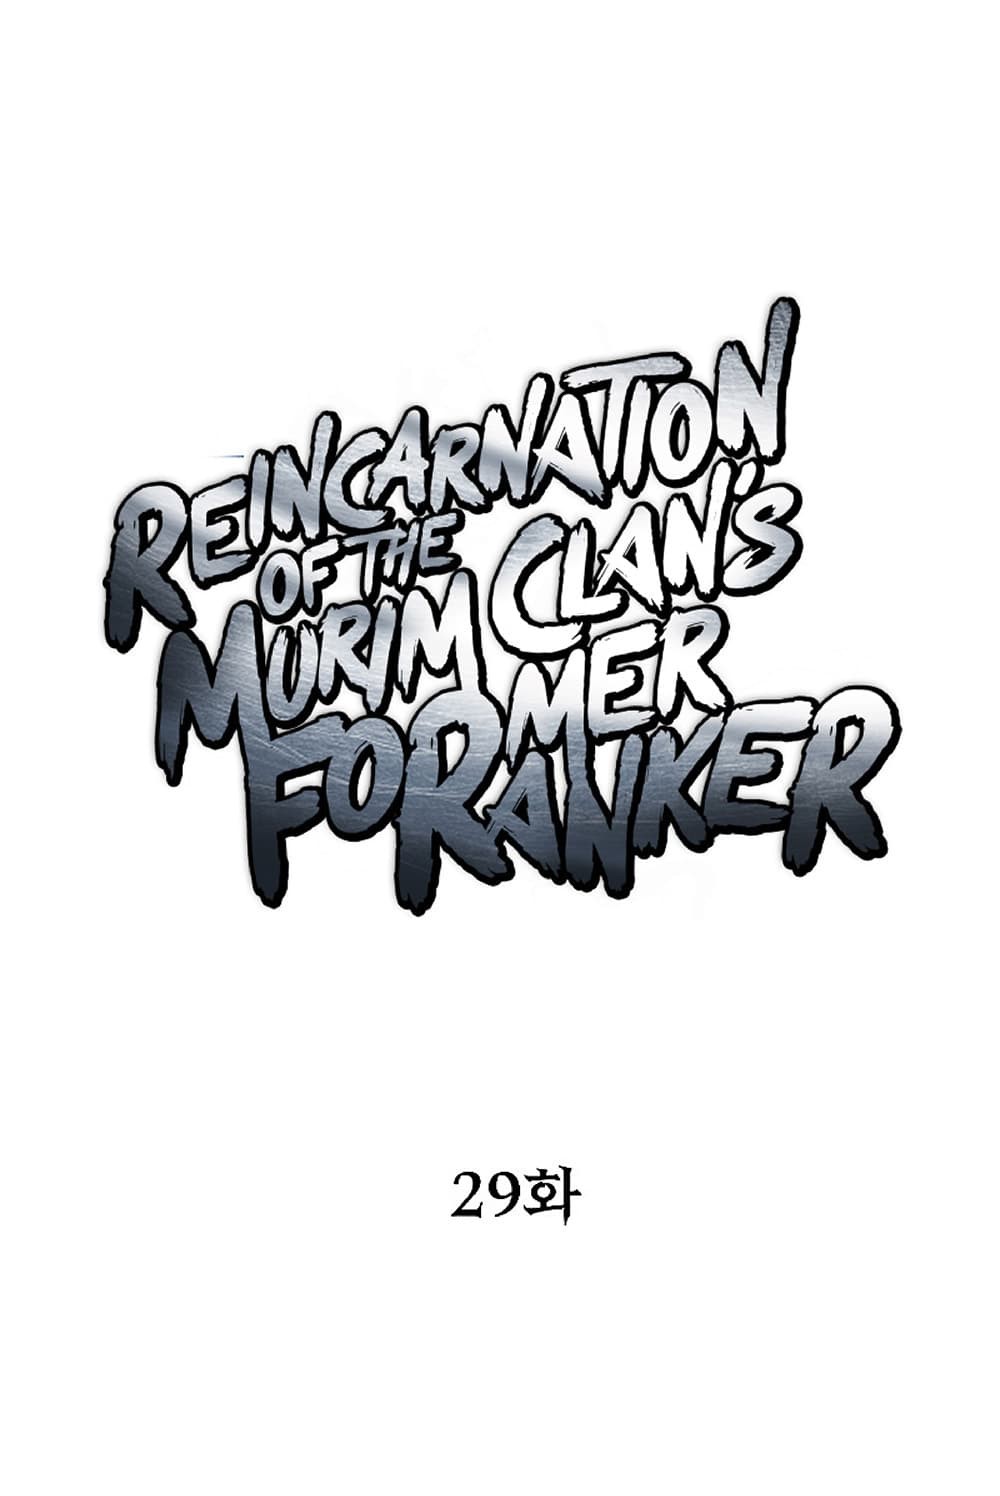 Reincarnation-of-the-Murim-Clans-Former-Ranker--29-37.jpg